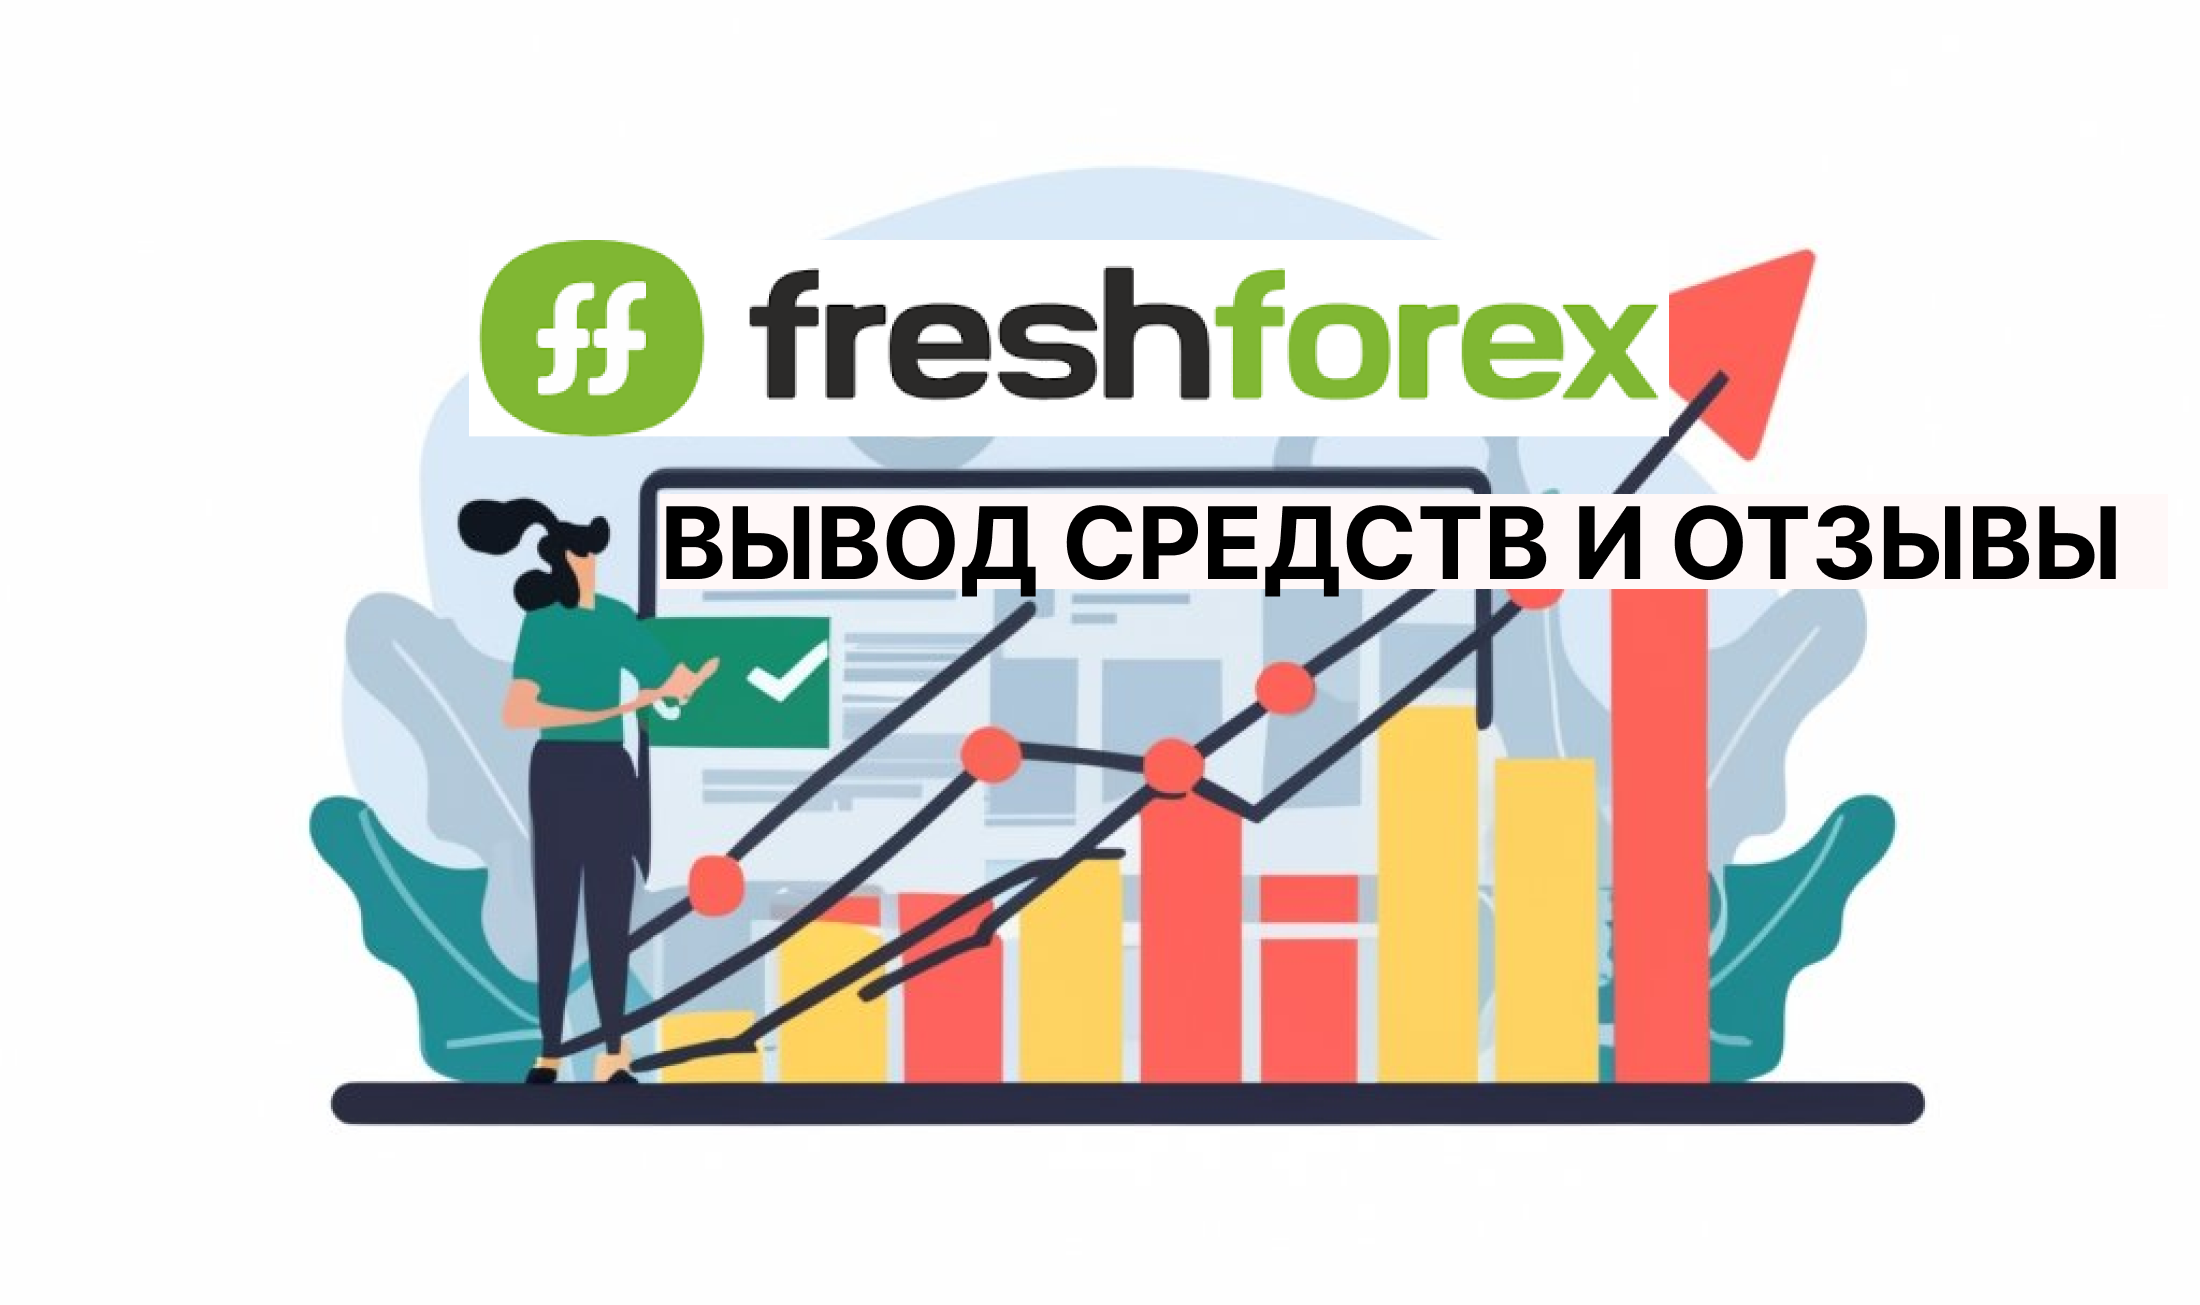 Freshforex вывод средств и отзывы